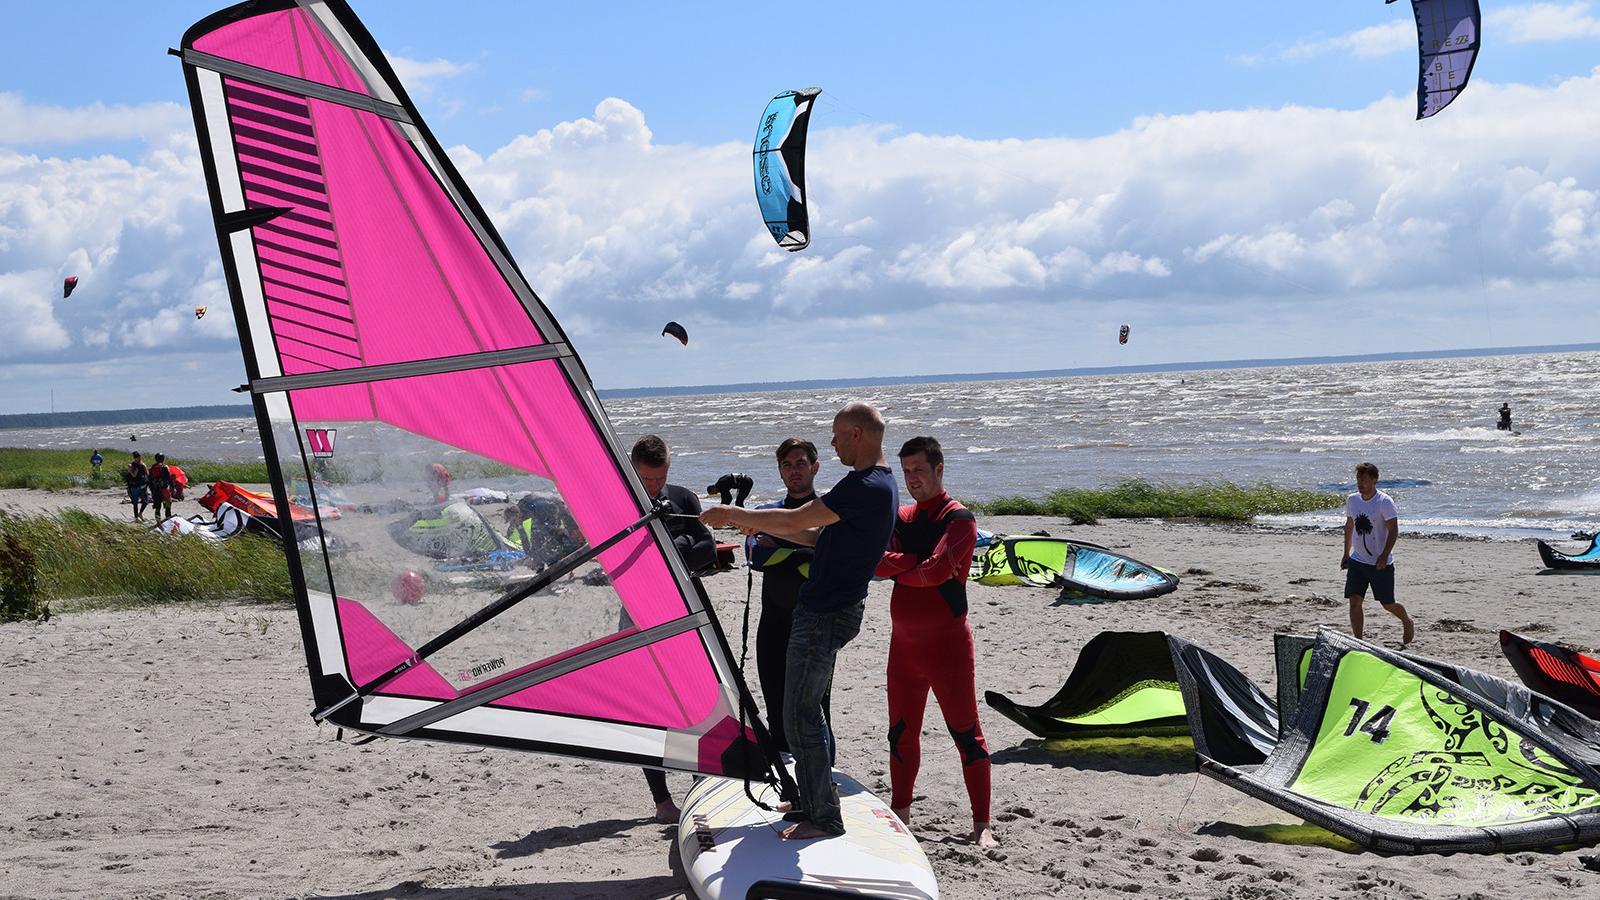 "Pärnu Surf" sērfošanas dēļa noma un apmācības Pērnavas pludmalē